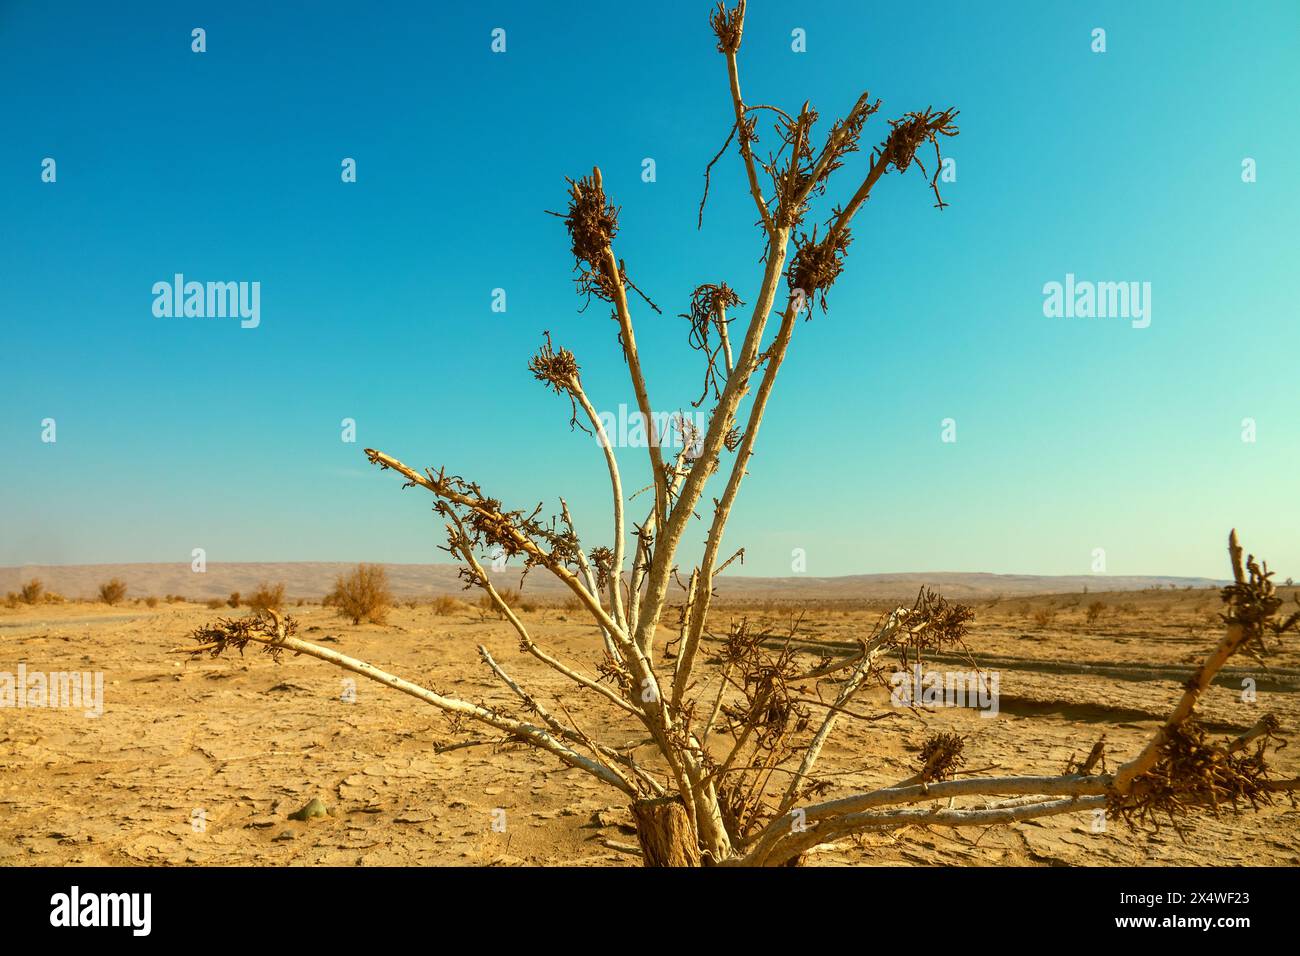 Deserti dell'Iran centrale (altopiano iraniano) in inverno. Deshte-Kevir - deserto salino. Appezzamento di deserto sabbioso-argilloso con sparsa foresta tamarisk-saxaul. Bianco Foto Stock